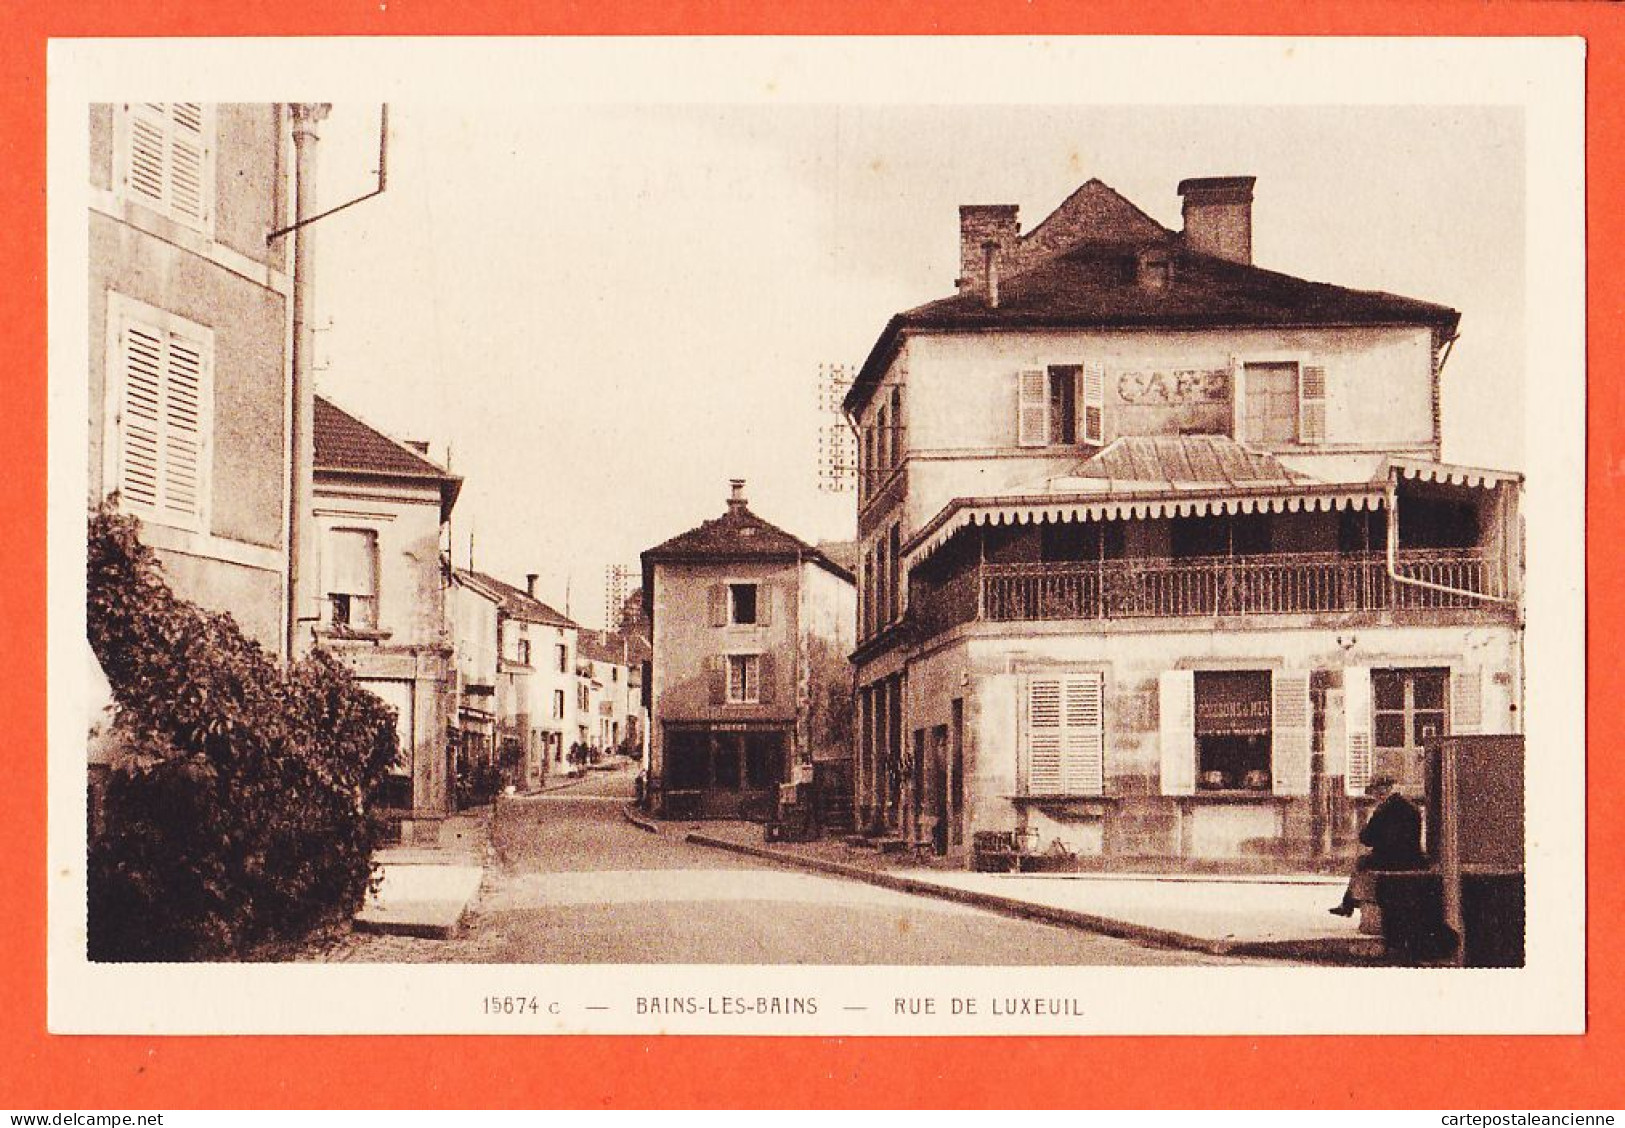 05797 / BAINS-Les-BAINS 88-Vosges Café Rue LUXEUIL 1920s Edition VEJUX Imp BRAUN 15674-C - Bains Les Bains